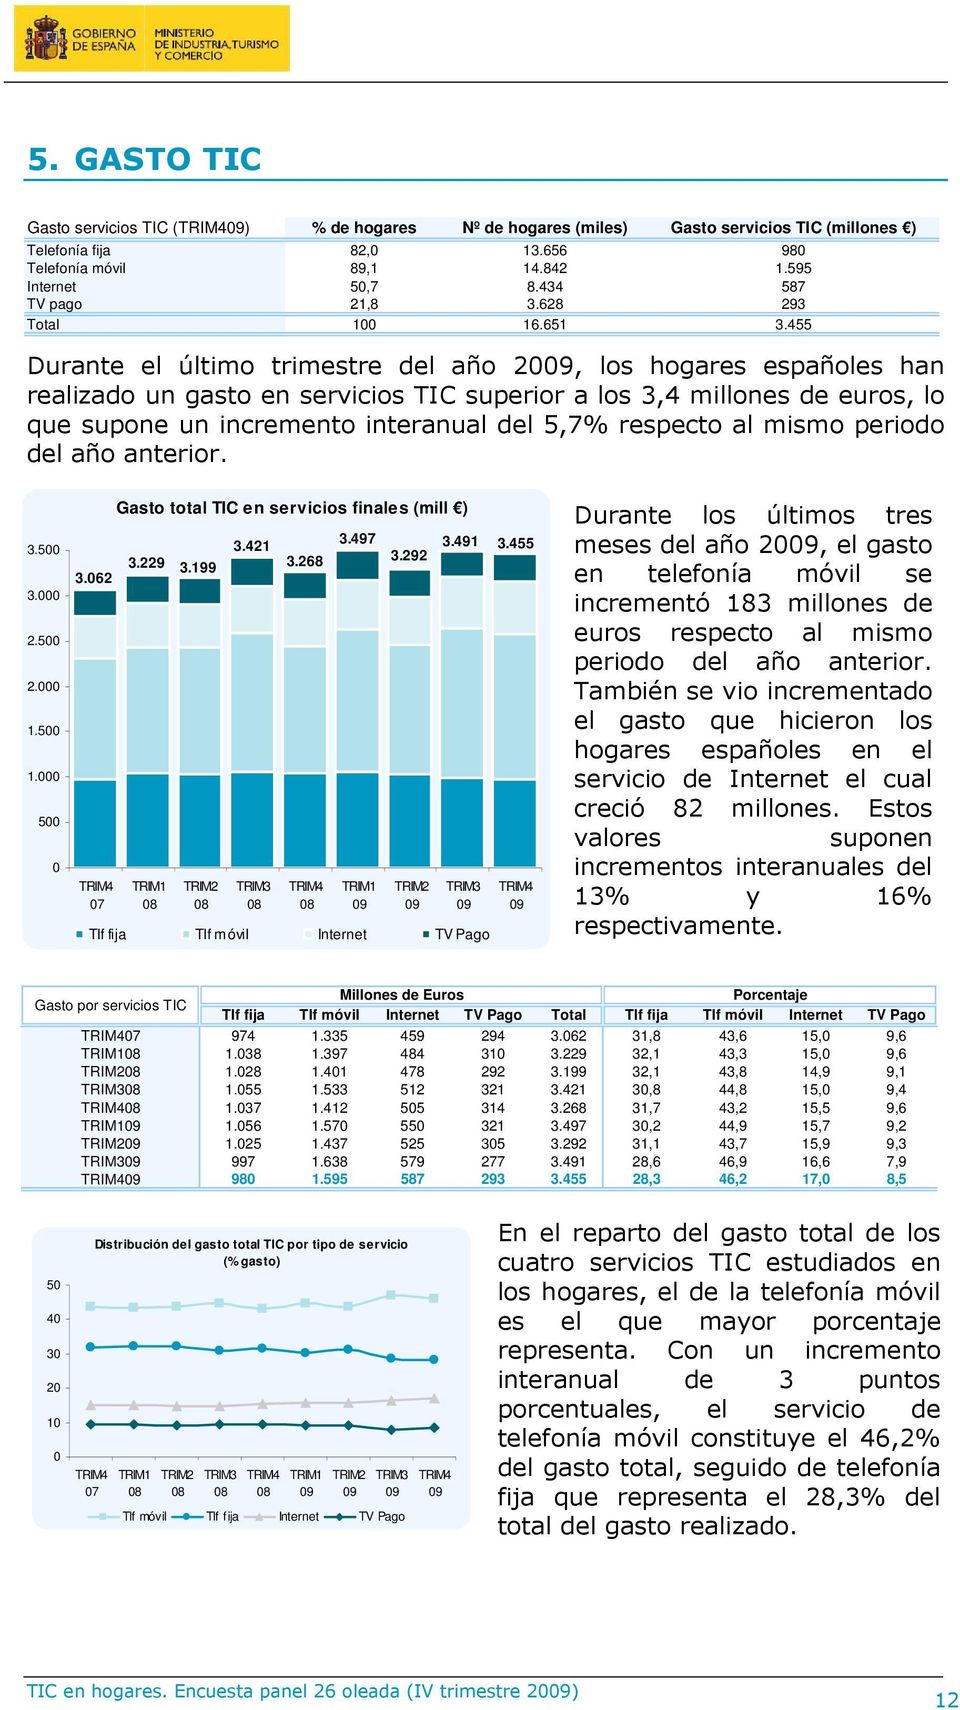 455 Durante el último trimestre del año 2, los hogares españoles han realizado un gasto en servicios TIC superior a los 3,4 millones de euros, lo que supone un incremento interanual del 5,7% respecto